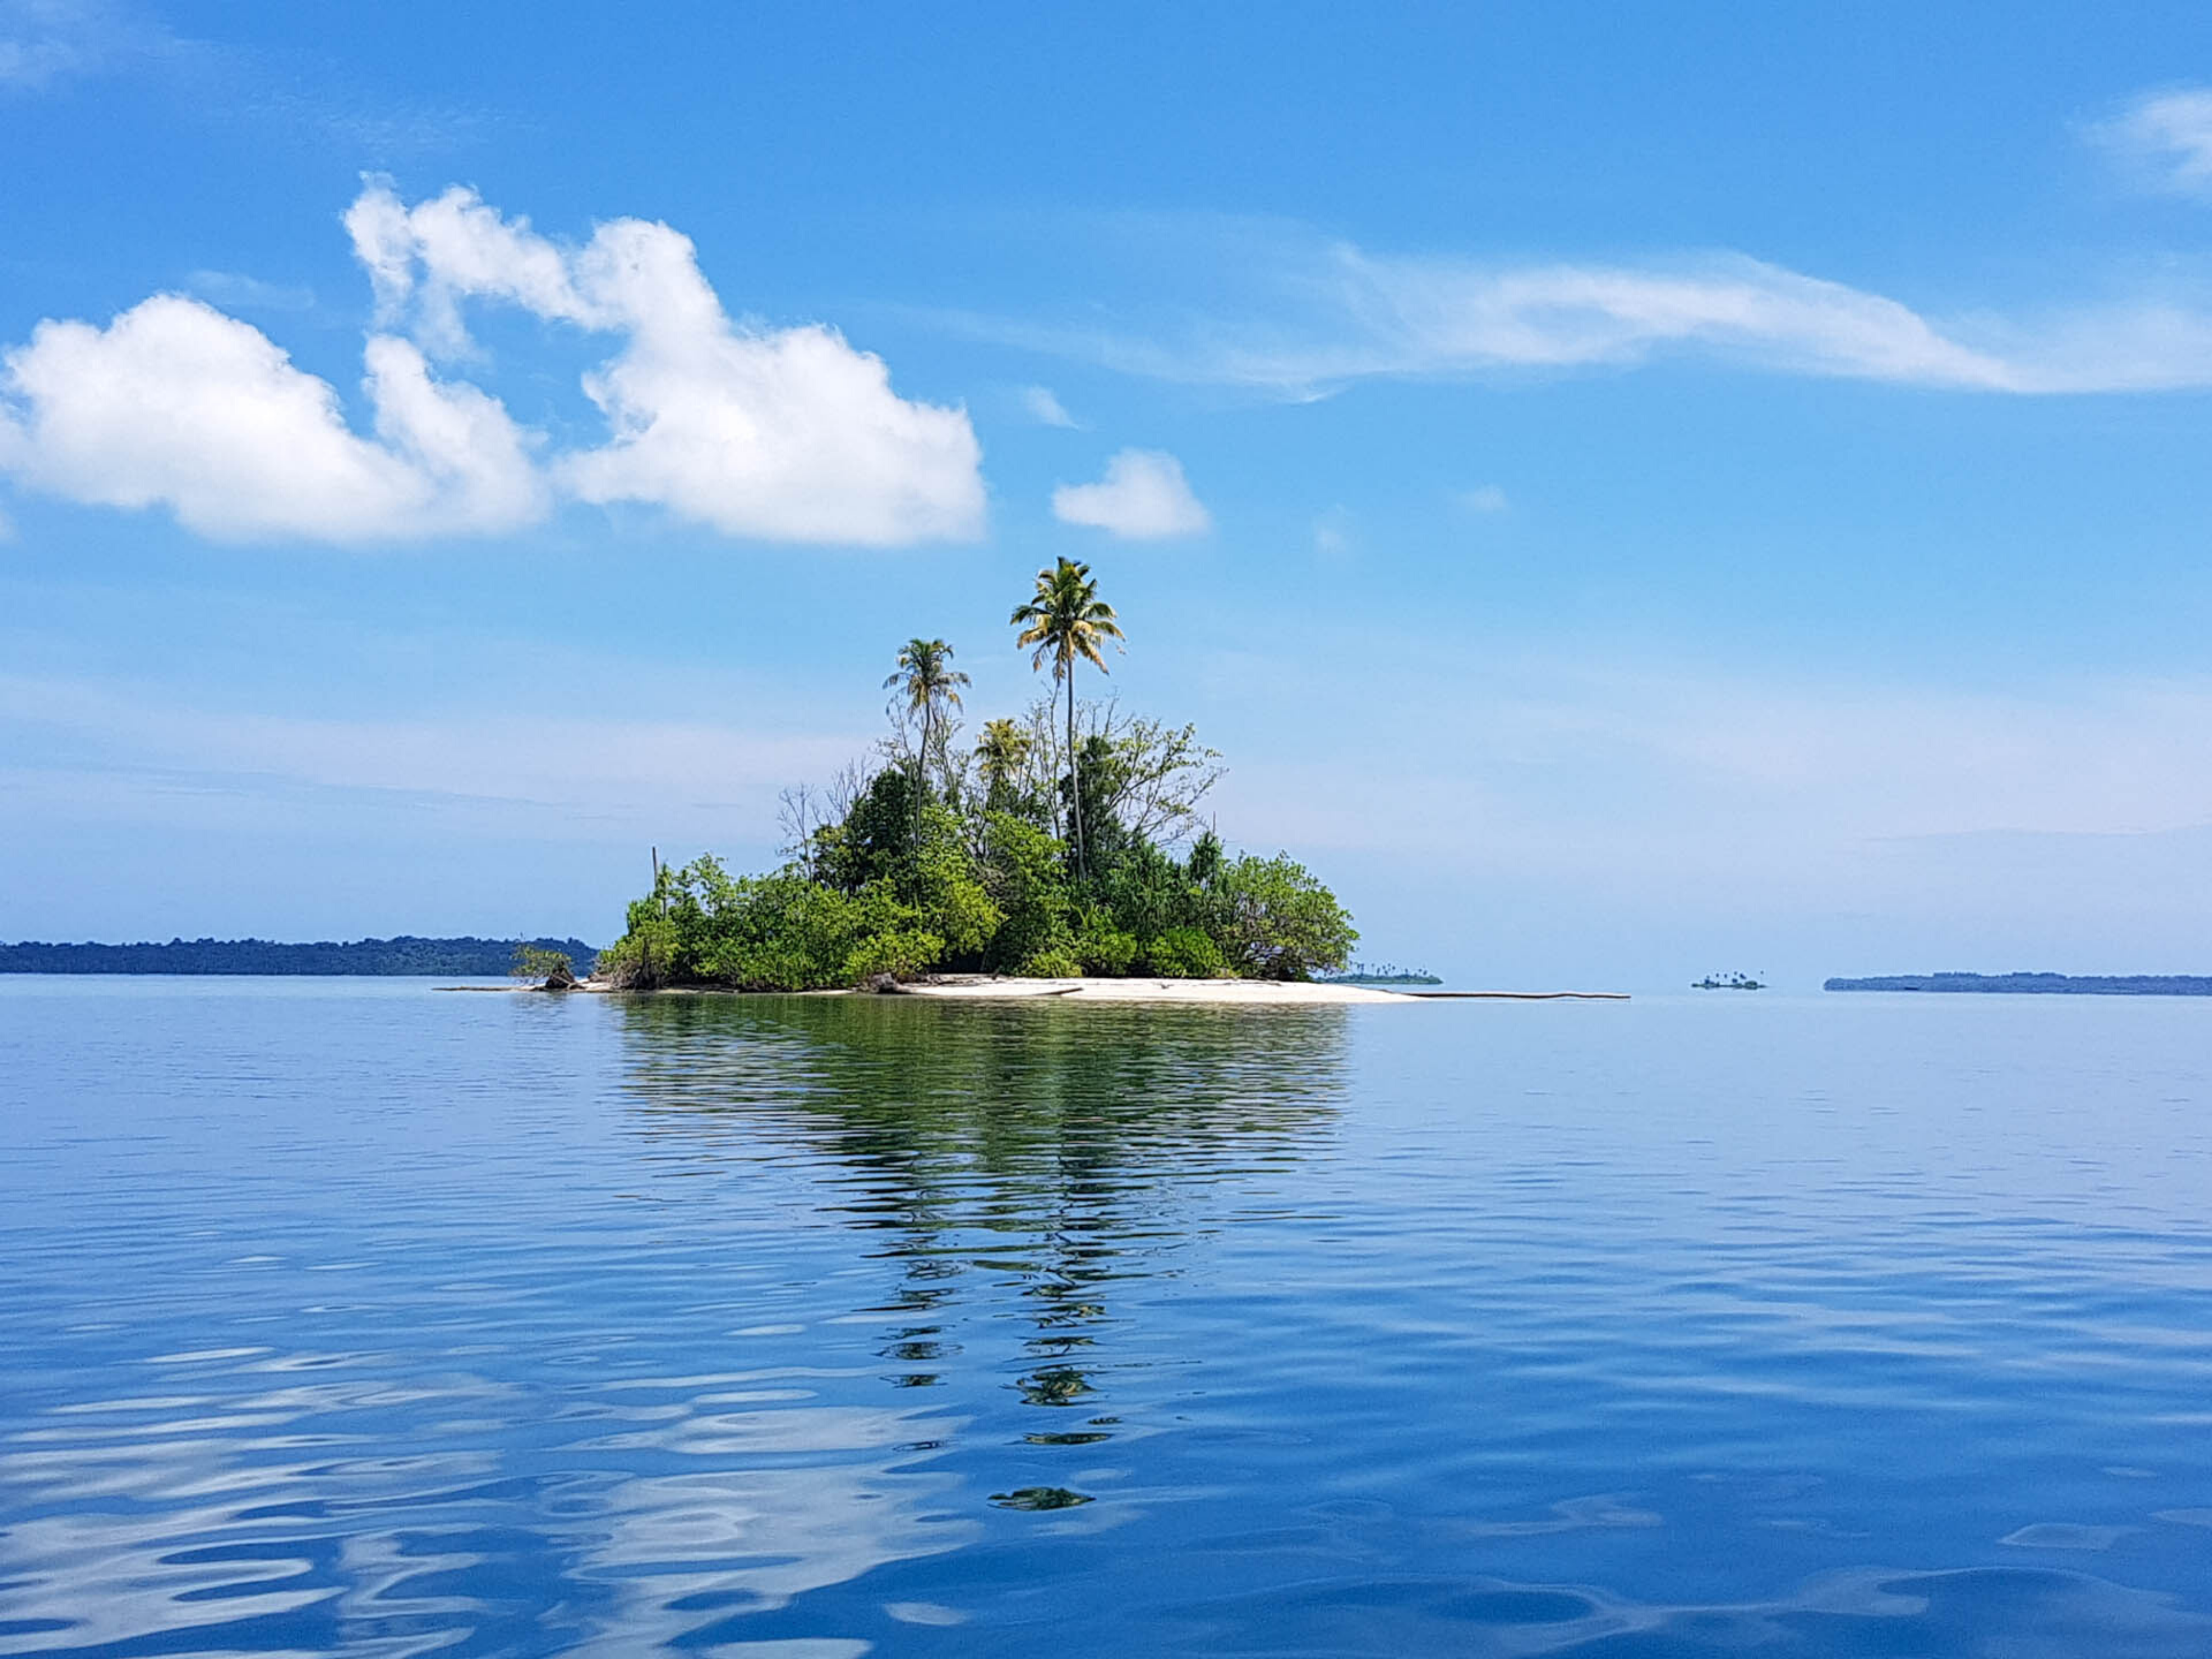 Banyak Sumatra FanTOUR - Kupić sobie rajską wyspę